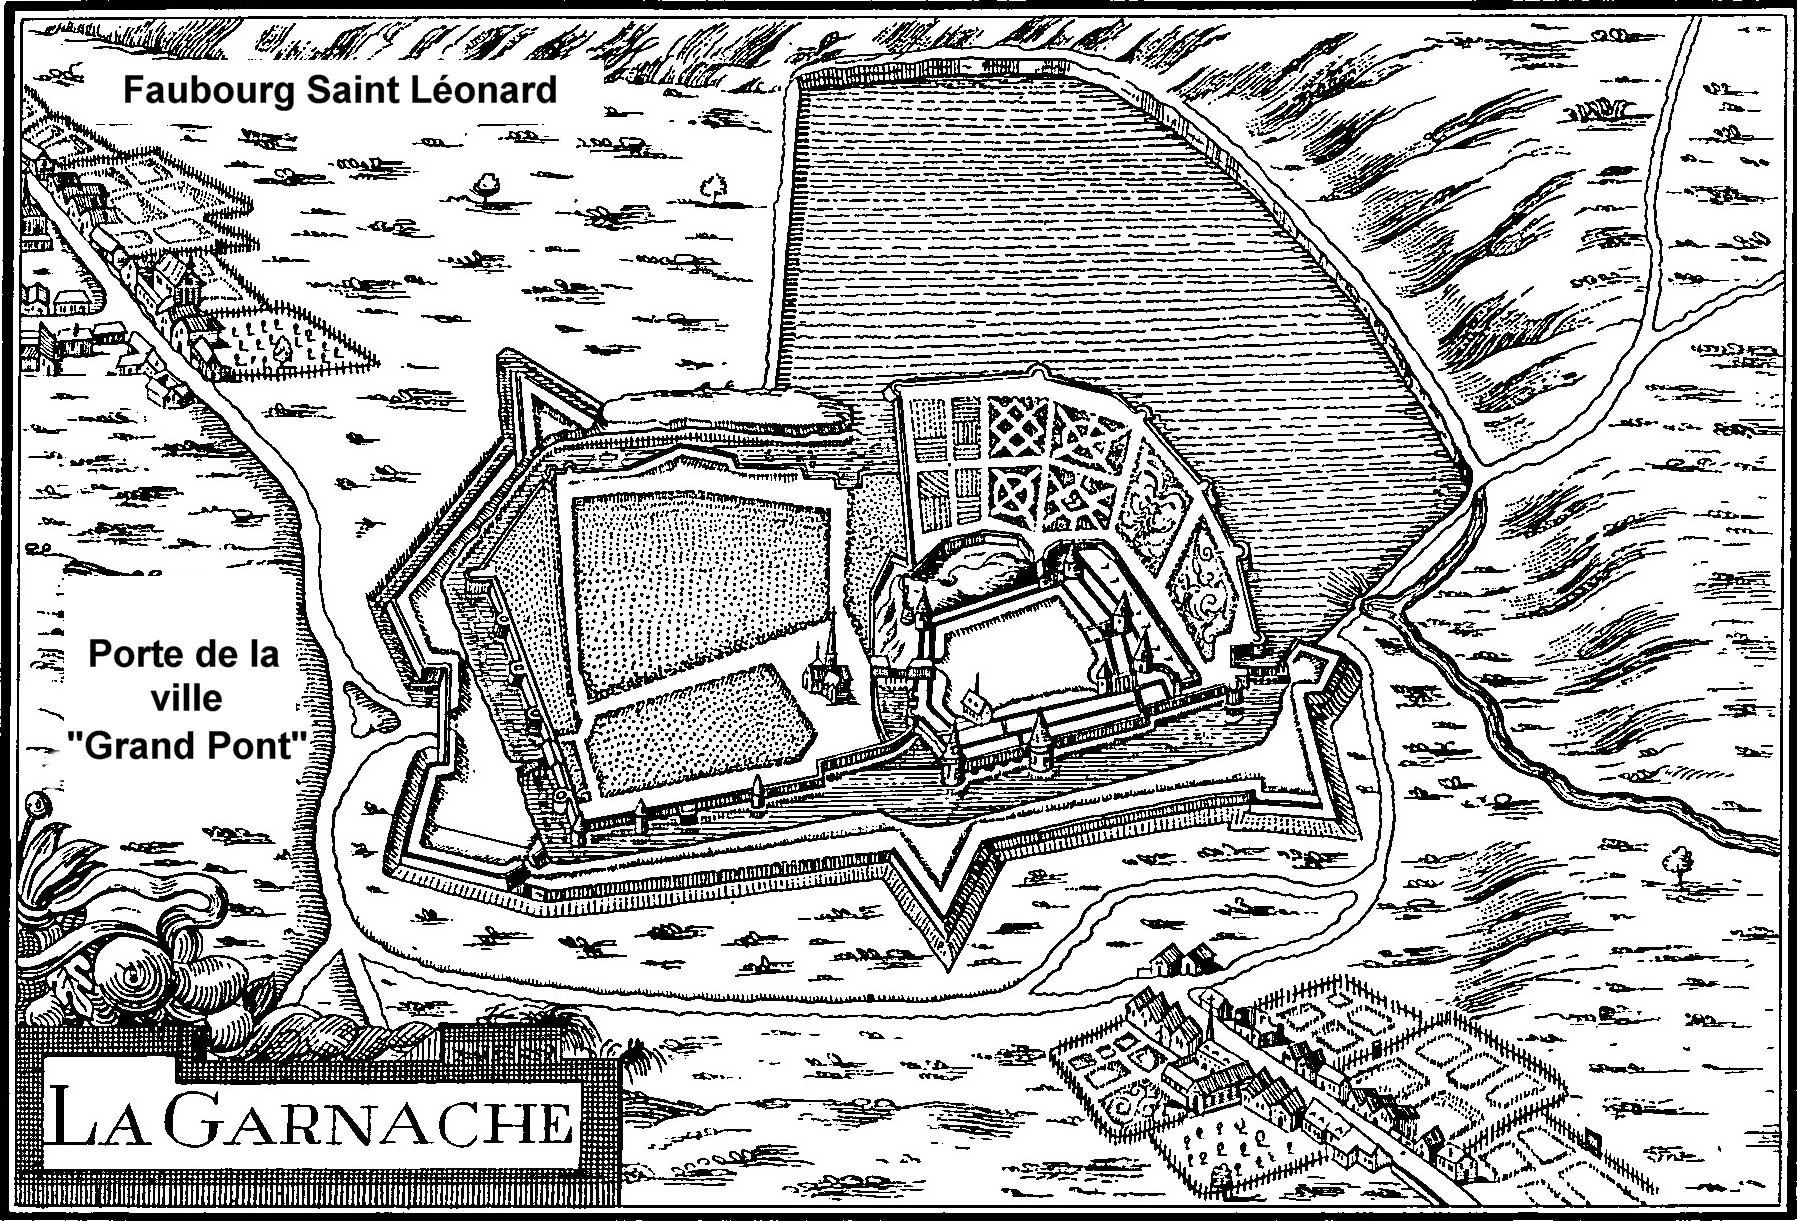 Le château de La Garnache